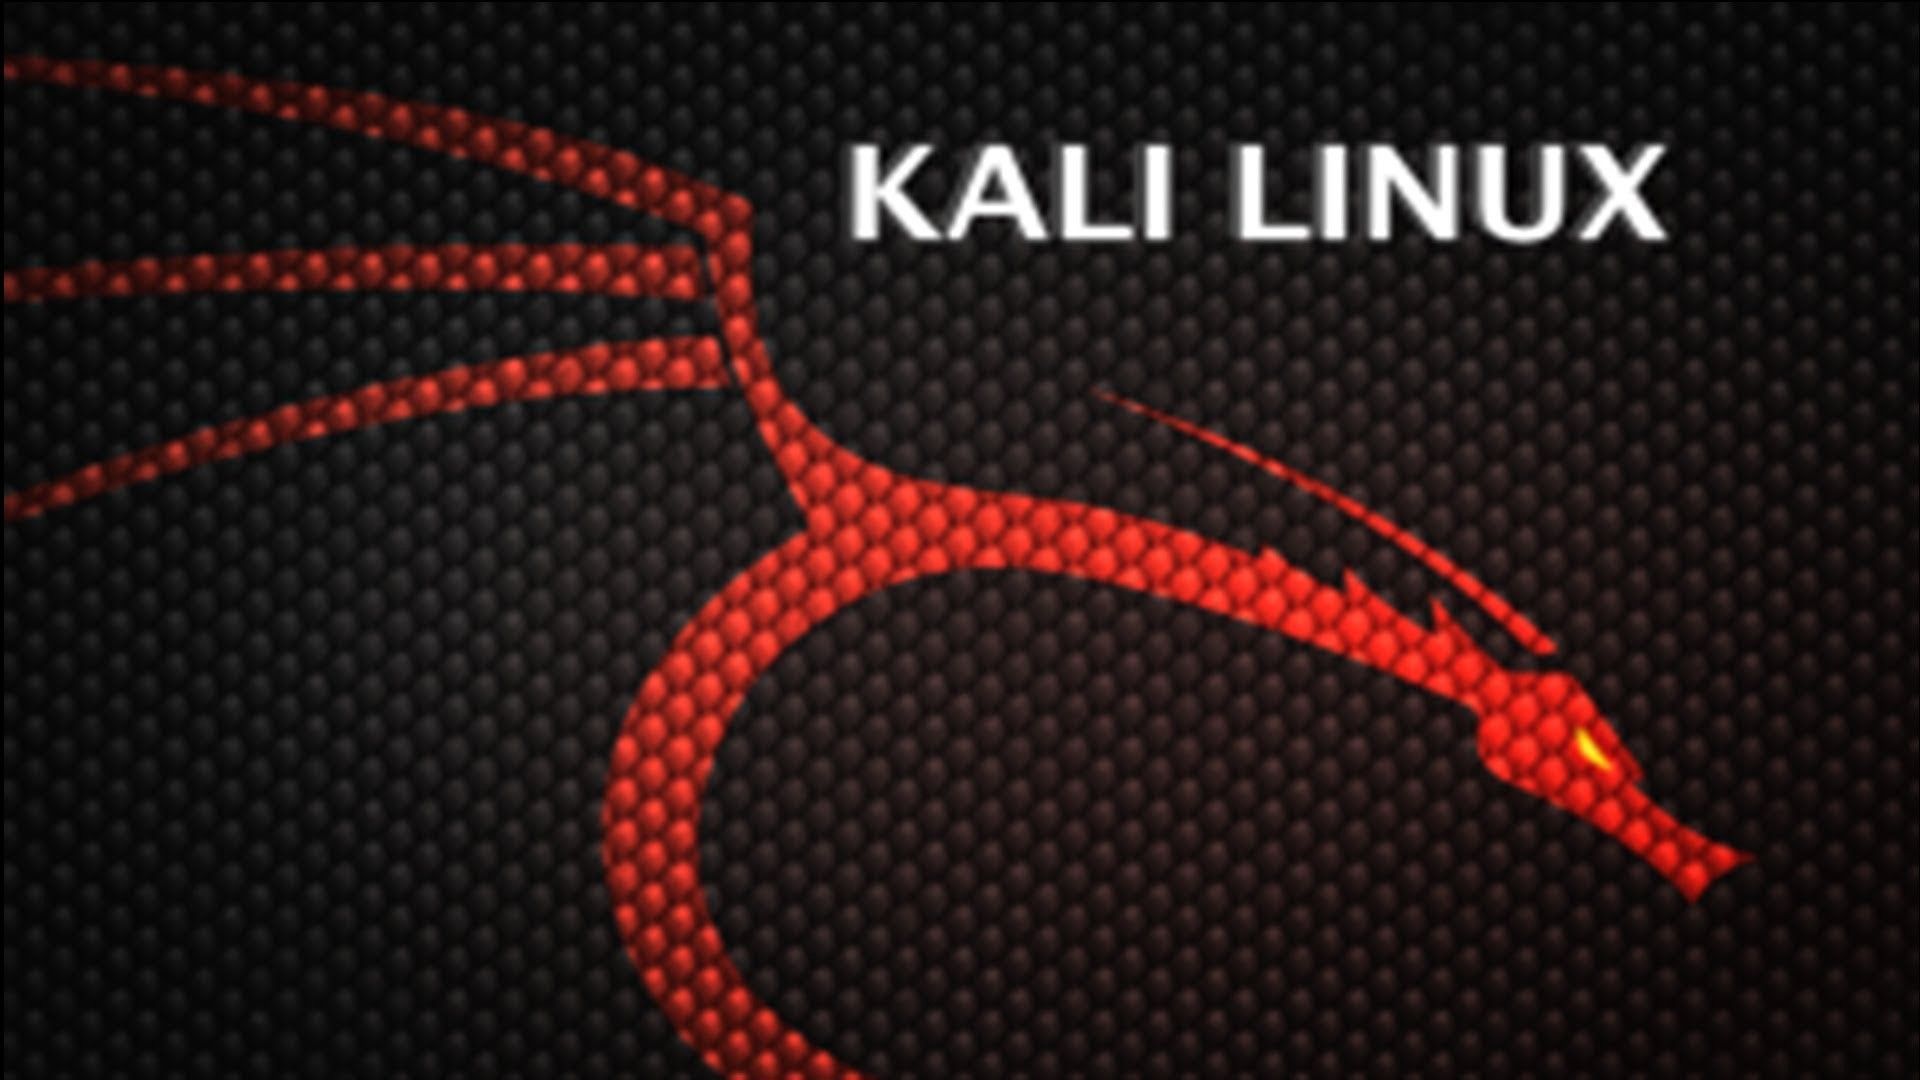 Kali Linux Wallpaper 1920×1080